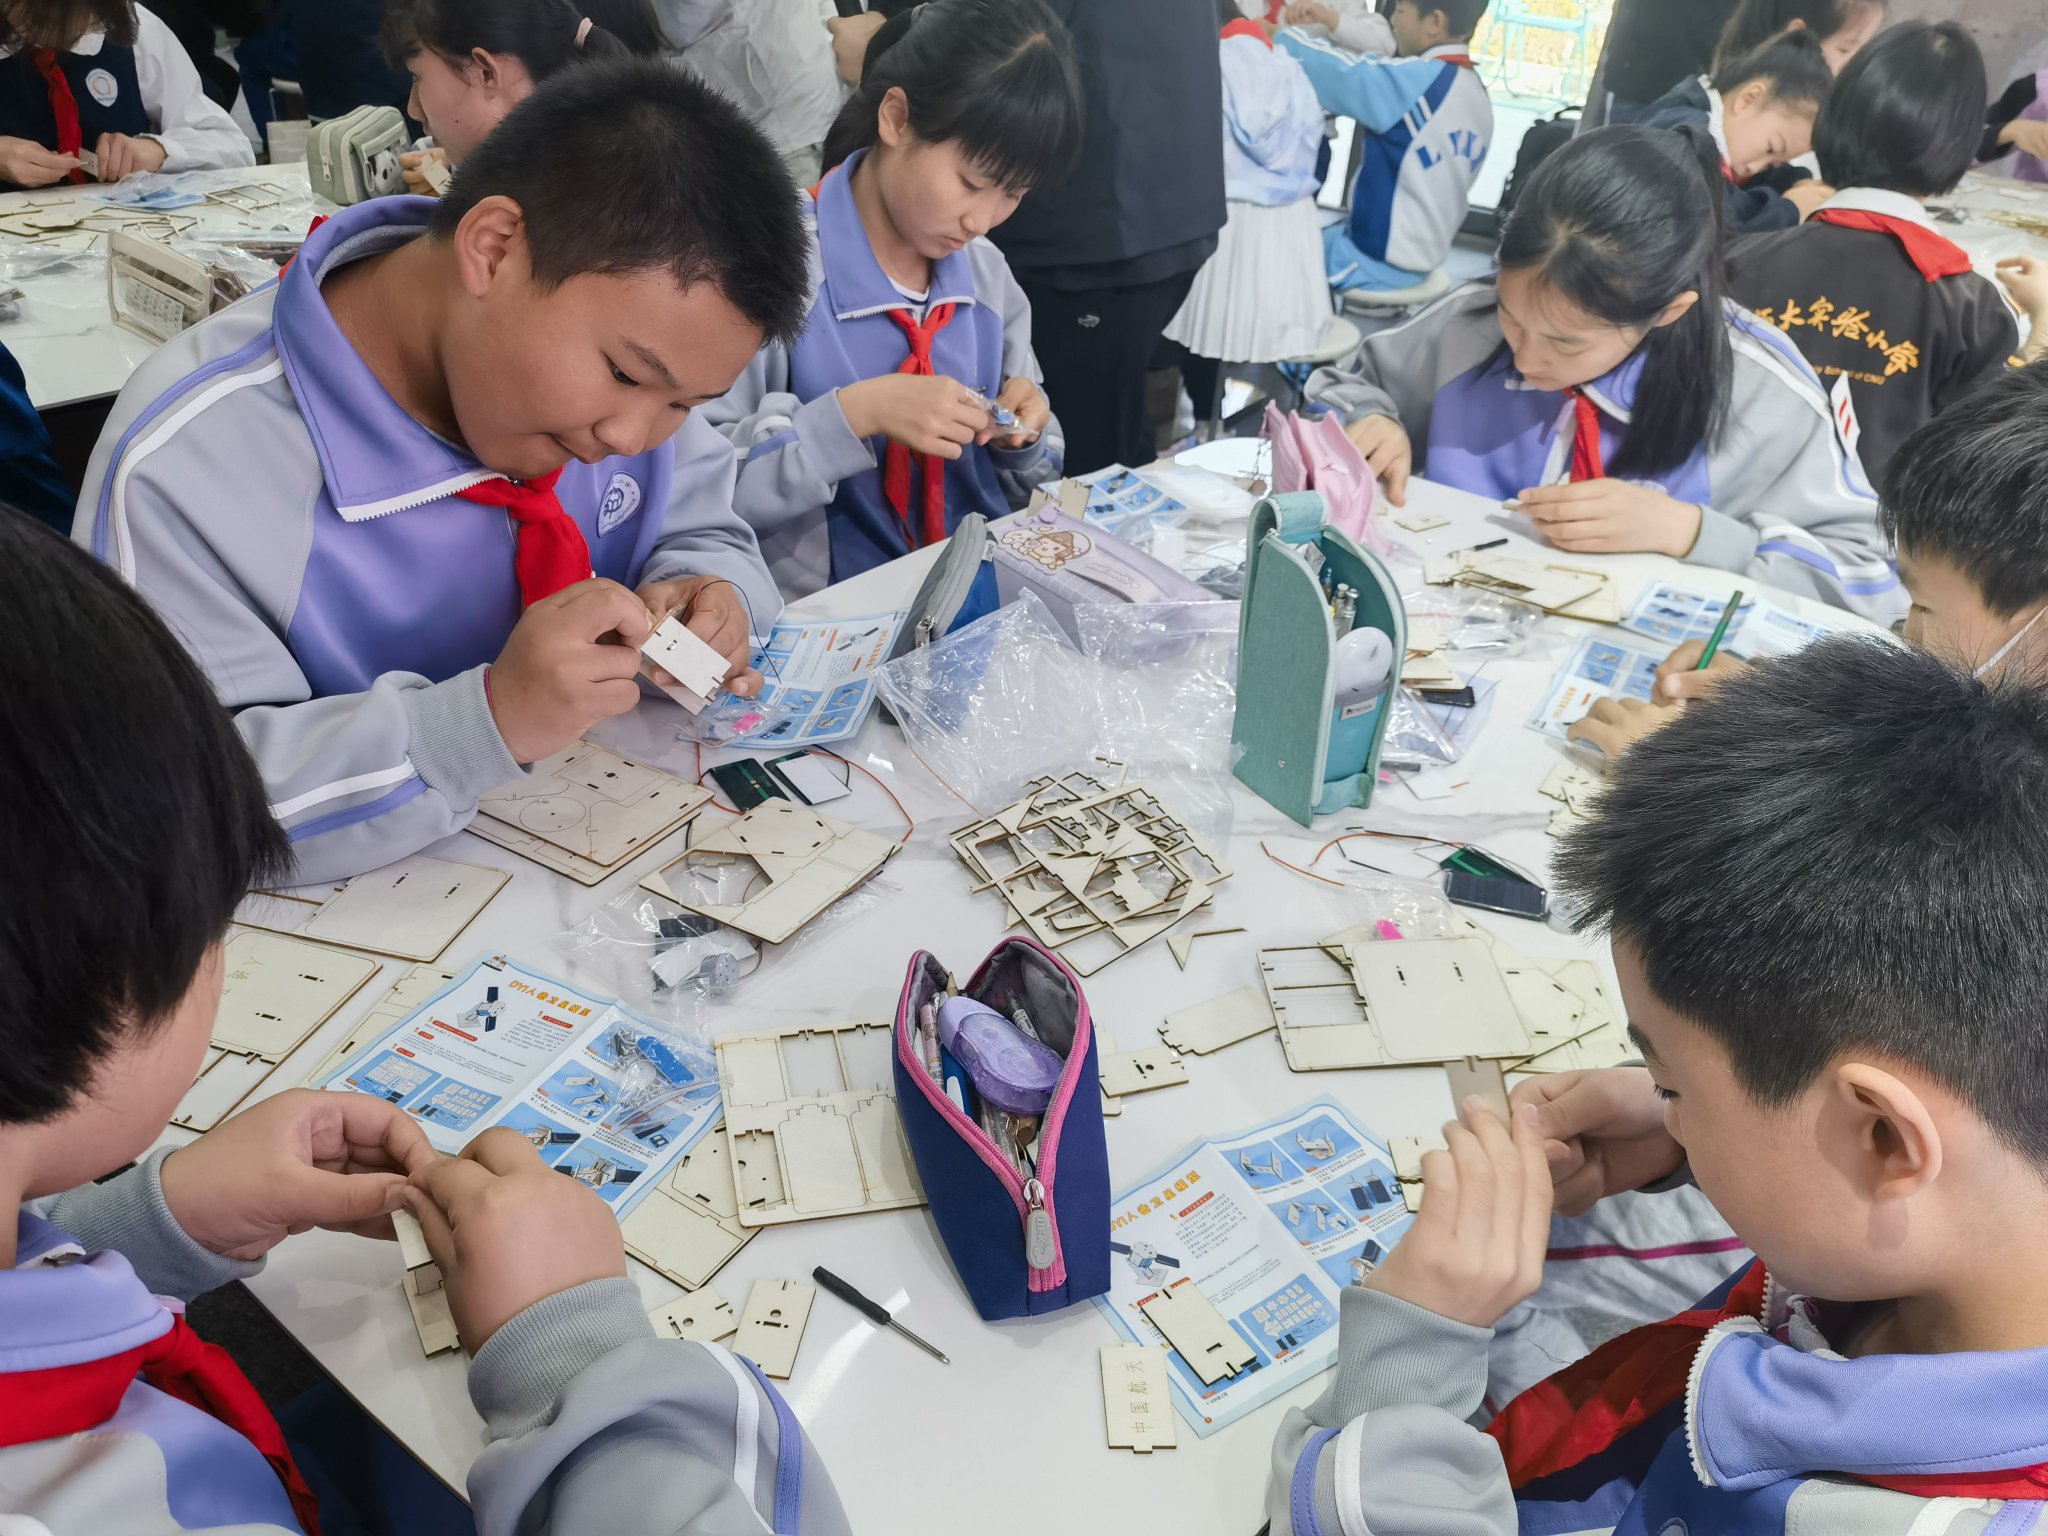 學生們正在跟隨老師的指導，製作衛星模型。新京報記者 楊菲菲 攝